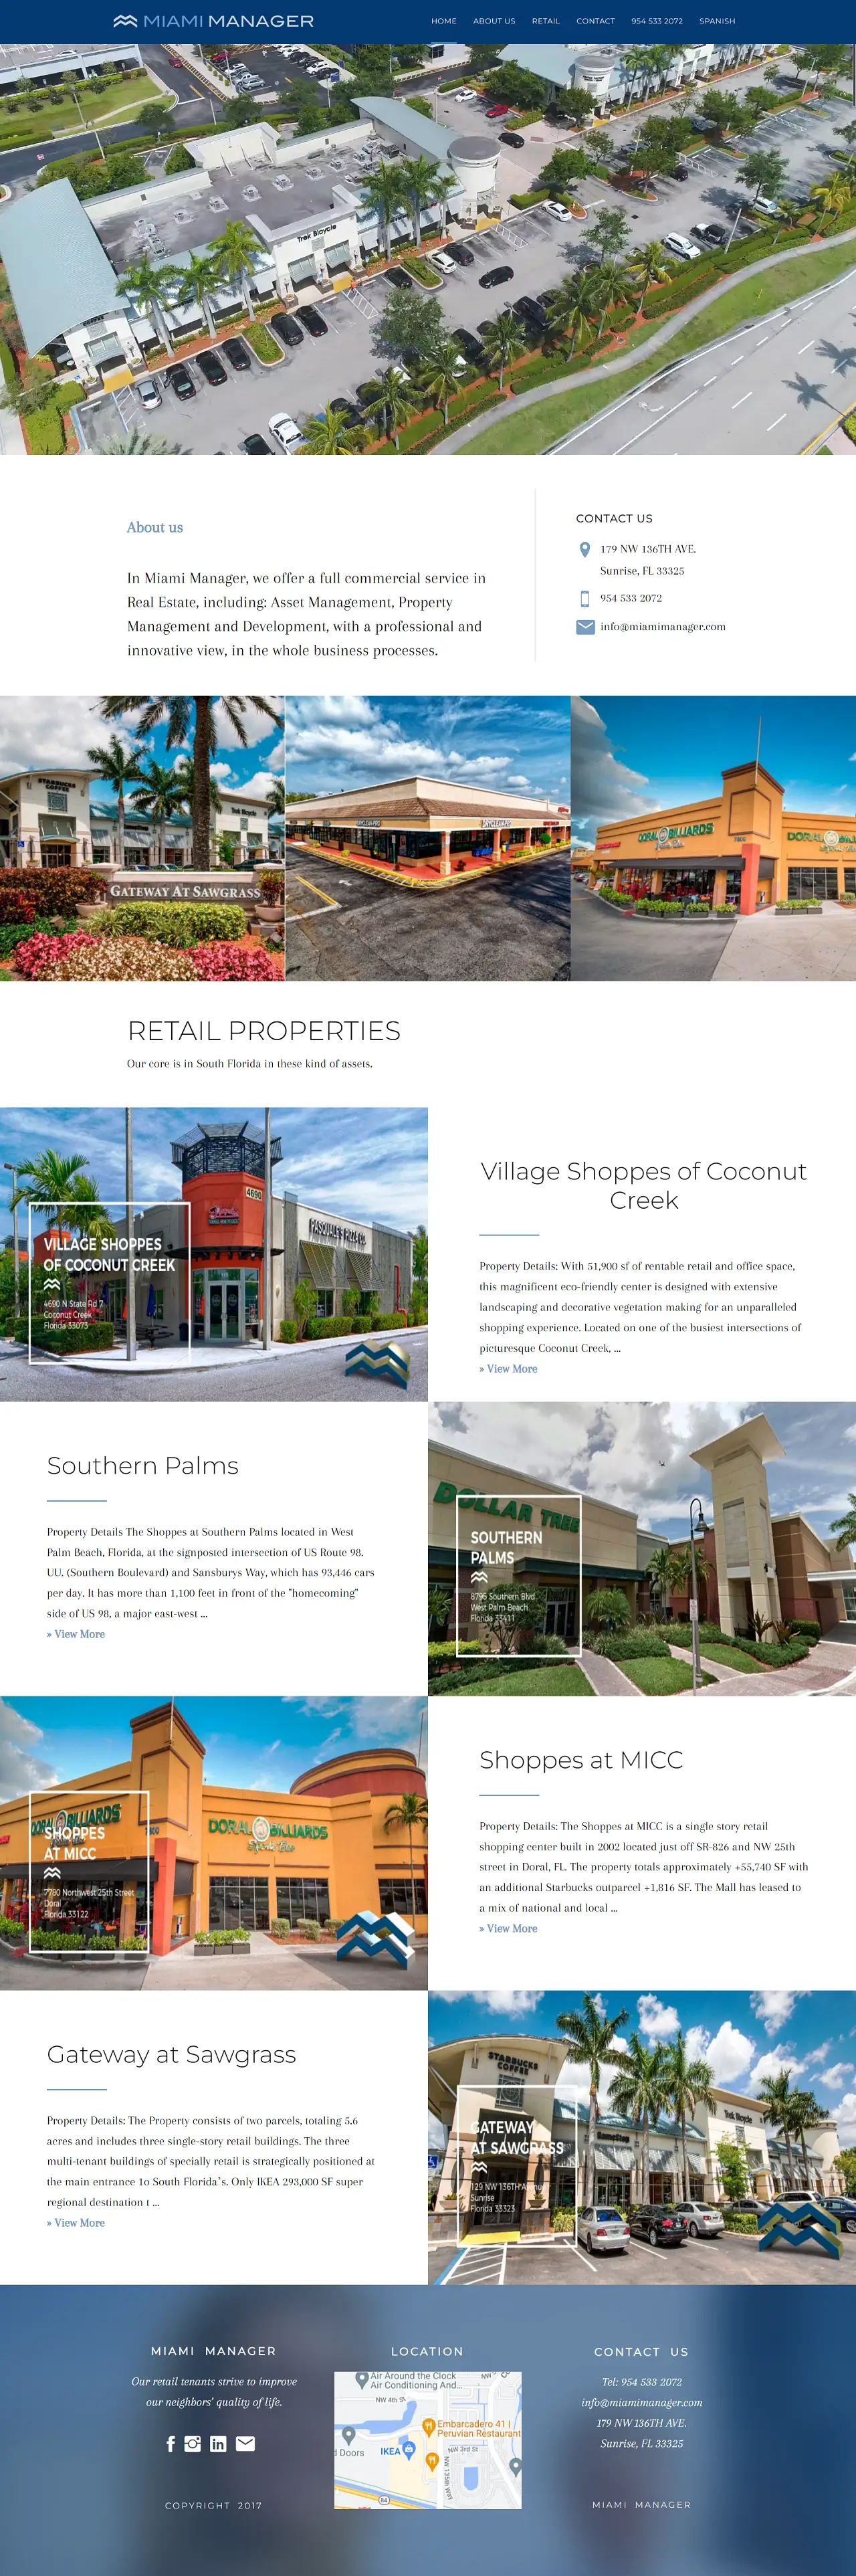 Demo de la home page de una web hecha en WordPress para una empresa de propiedades y bienes raÃ­ces en Miami